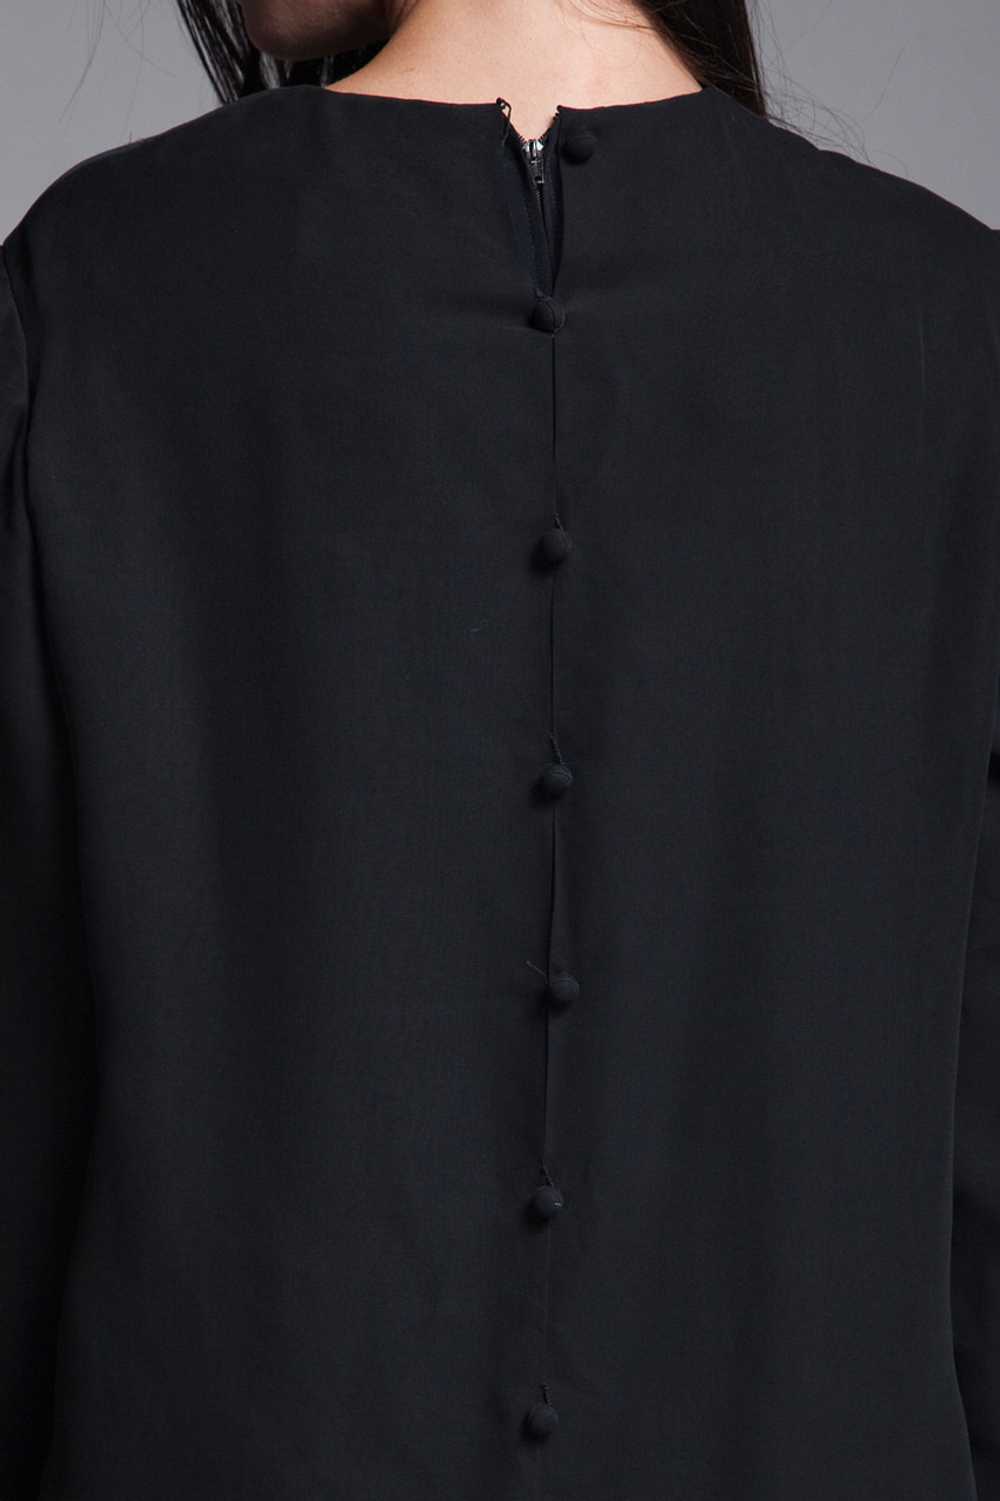 black pleated dress long sleeves sheer flowy vint… - image 8